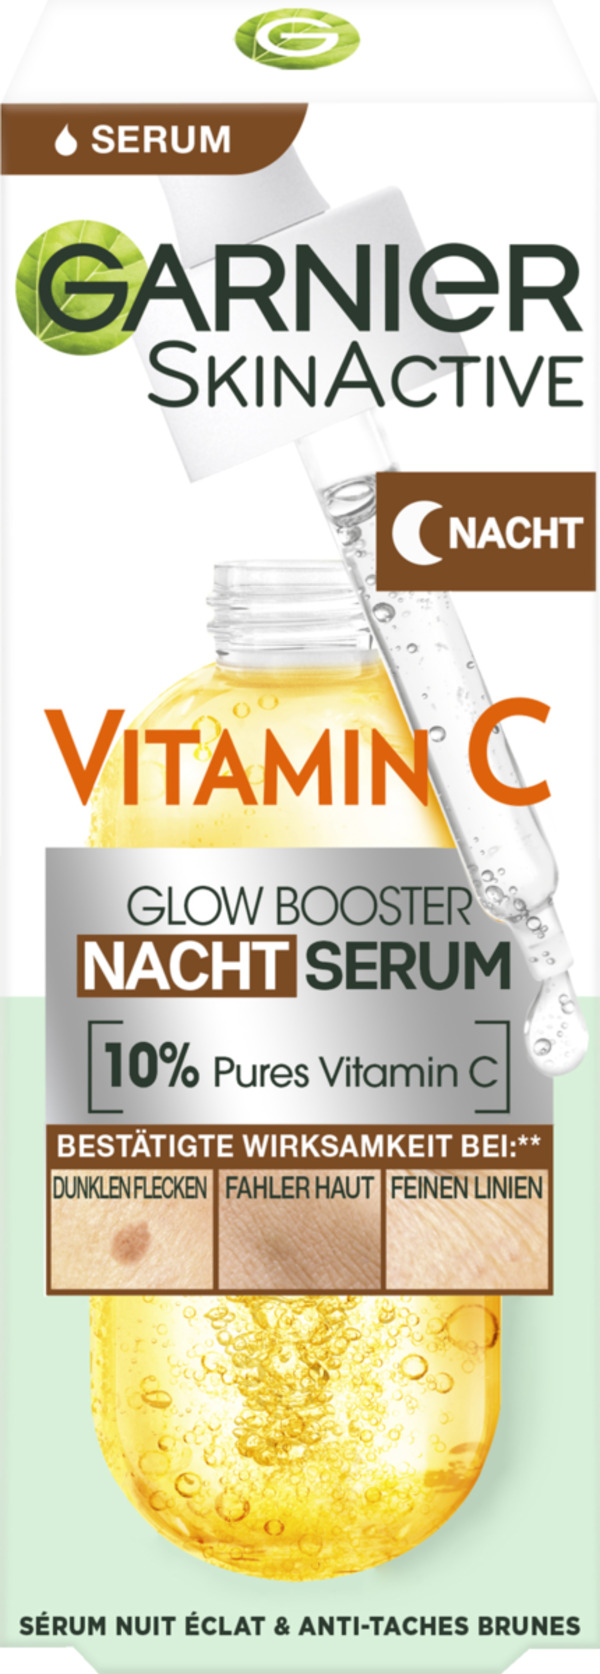 Bild 1 von Garnier Vitamin C Glow Booster Nacht Serum